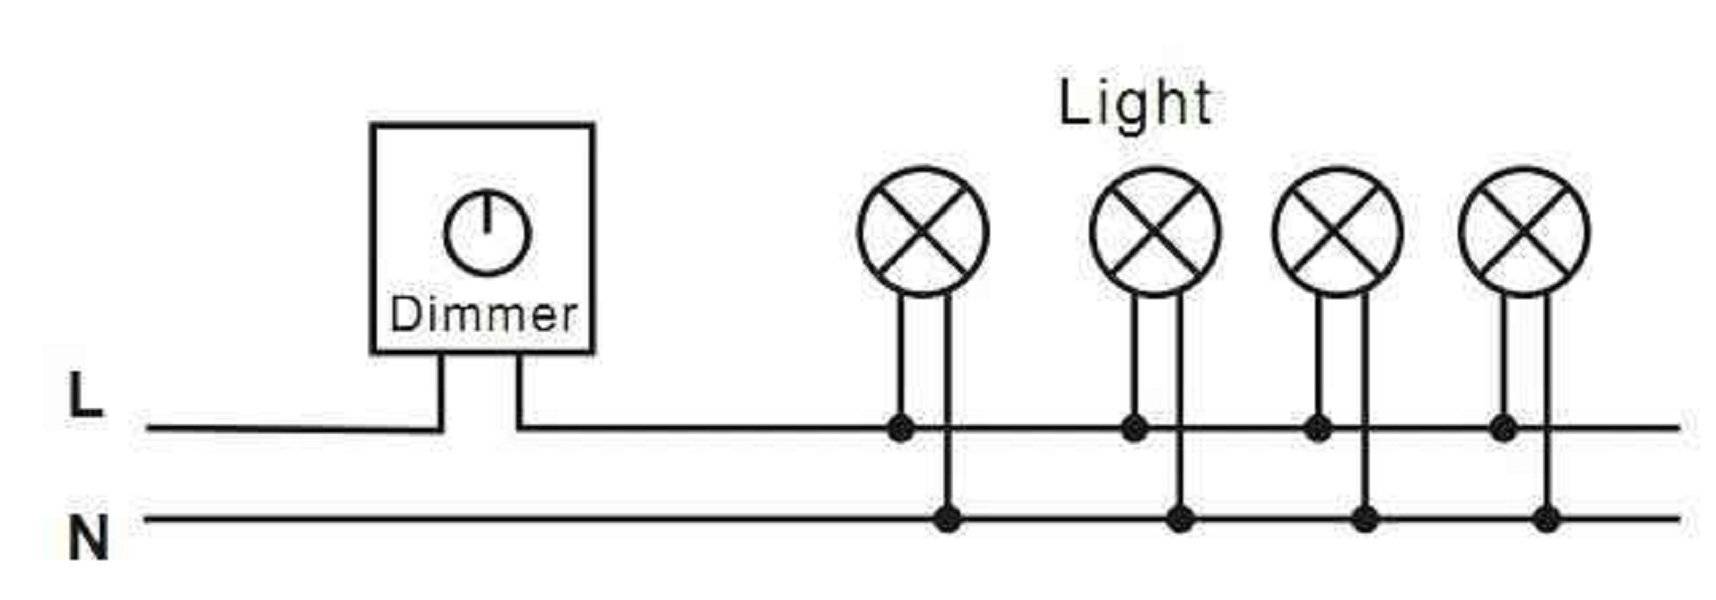 Выключатель с регулятором яркости для светодиодной лампы